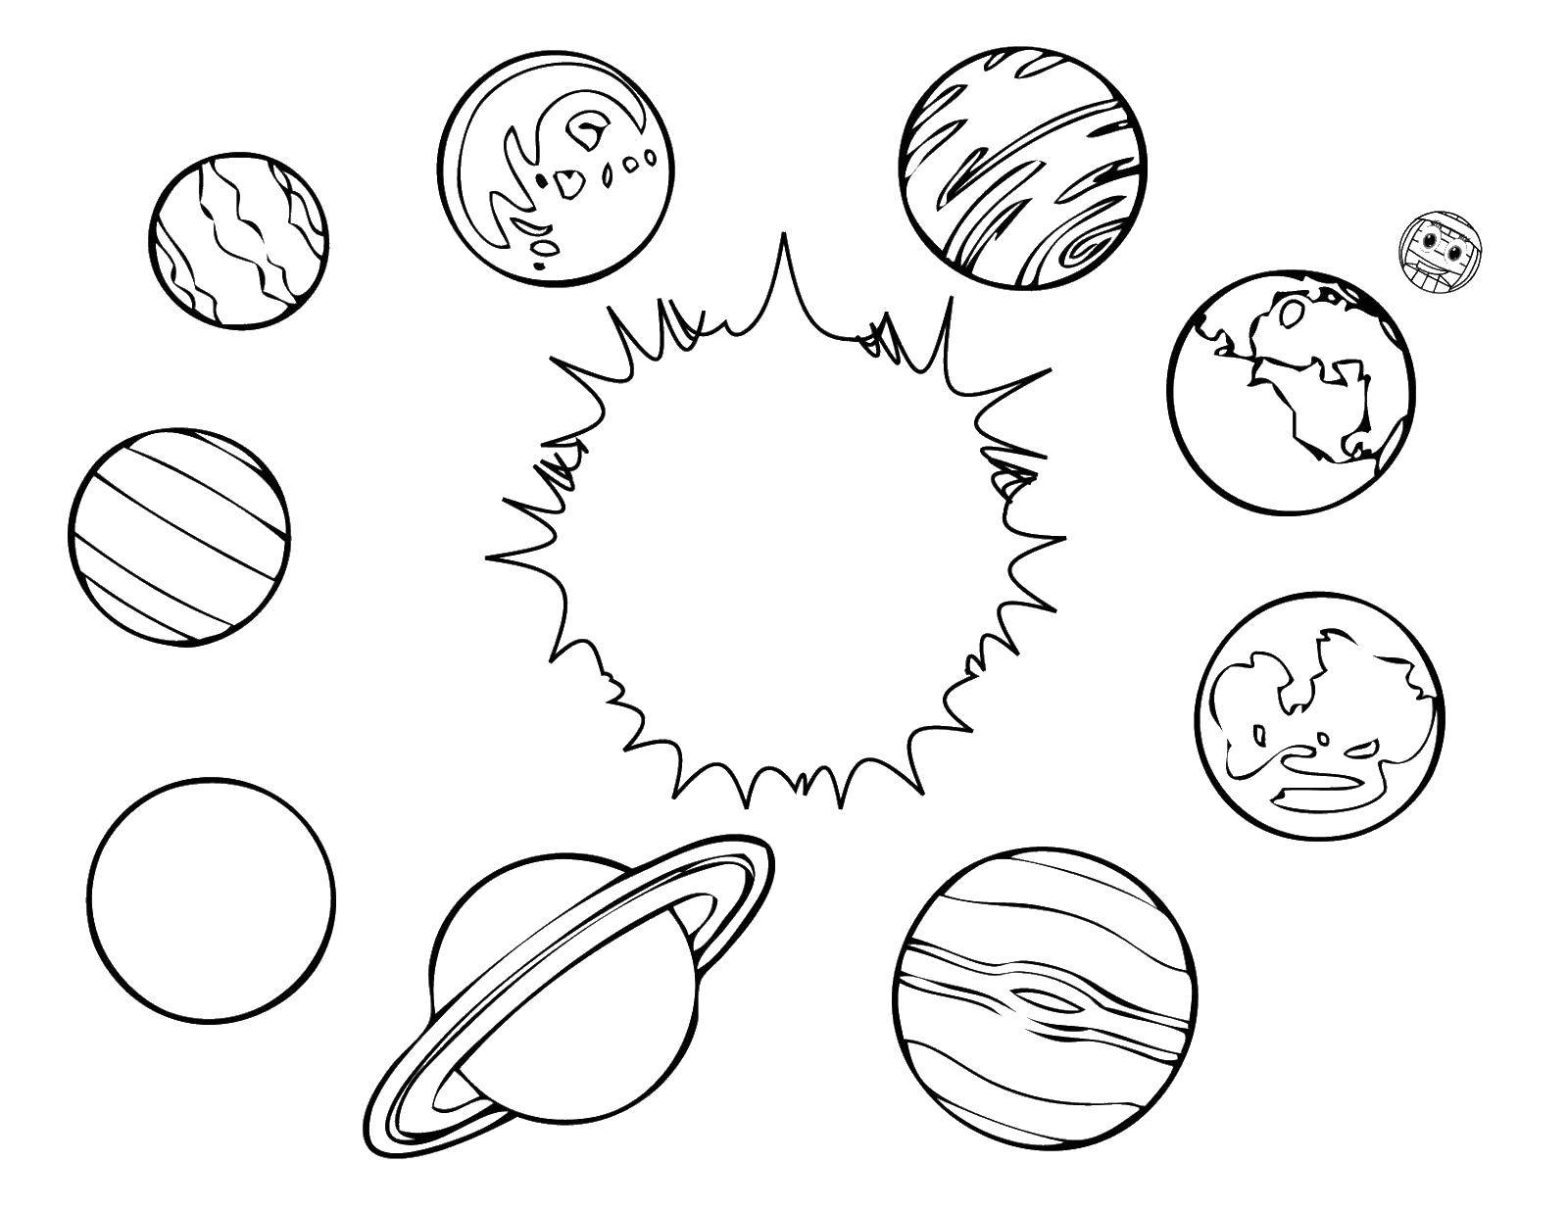 Раскраска космос для детей. Раскрась изображения солнечной системы, планет и солнца. (планеты, солнечная, система, солнце)